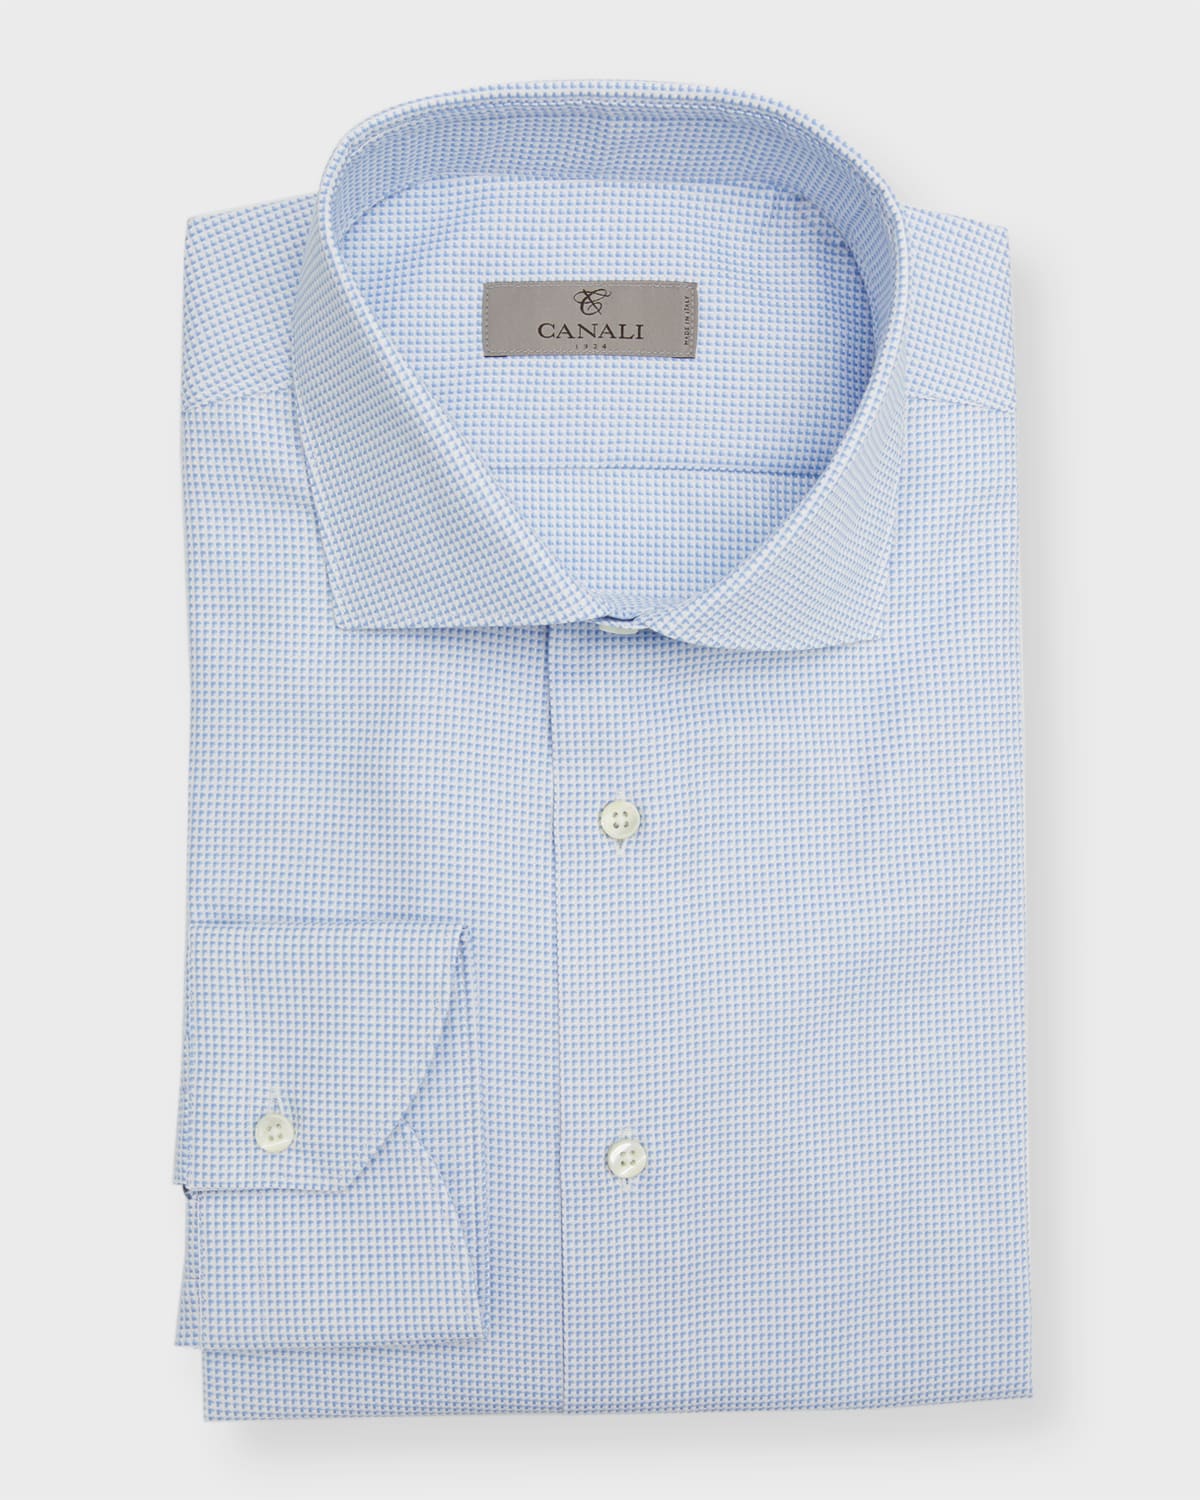 Men's Micro-Print Cotton Dress Shirt